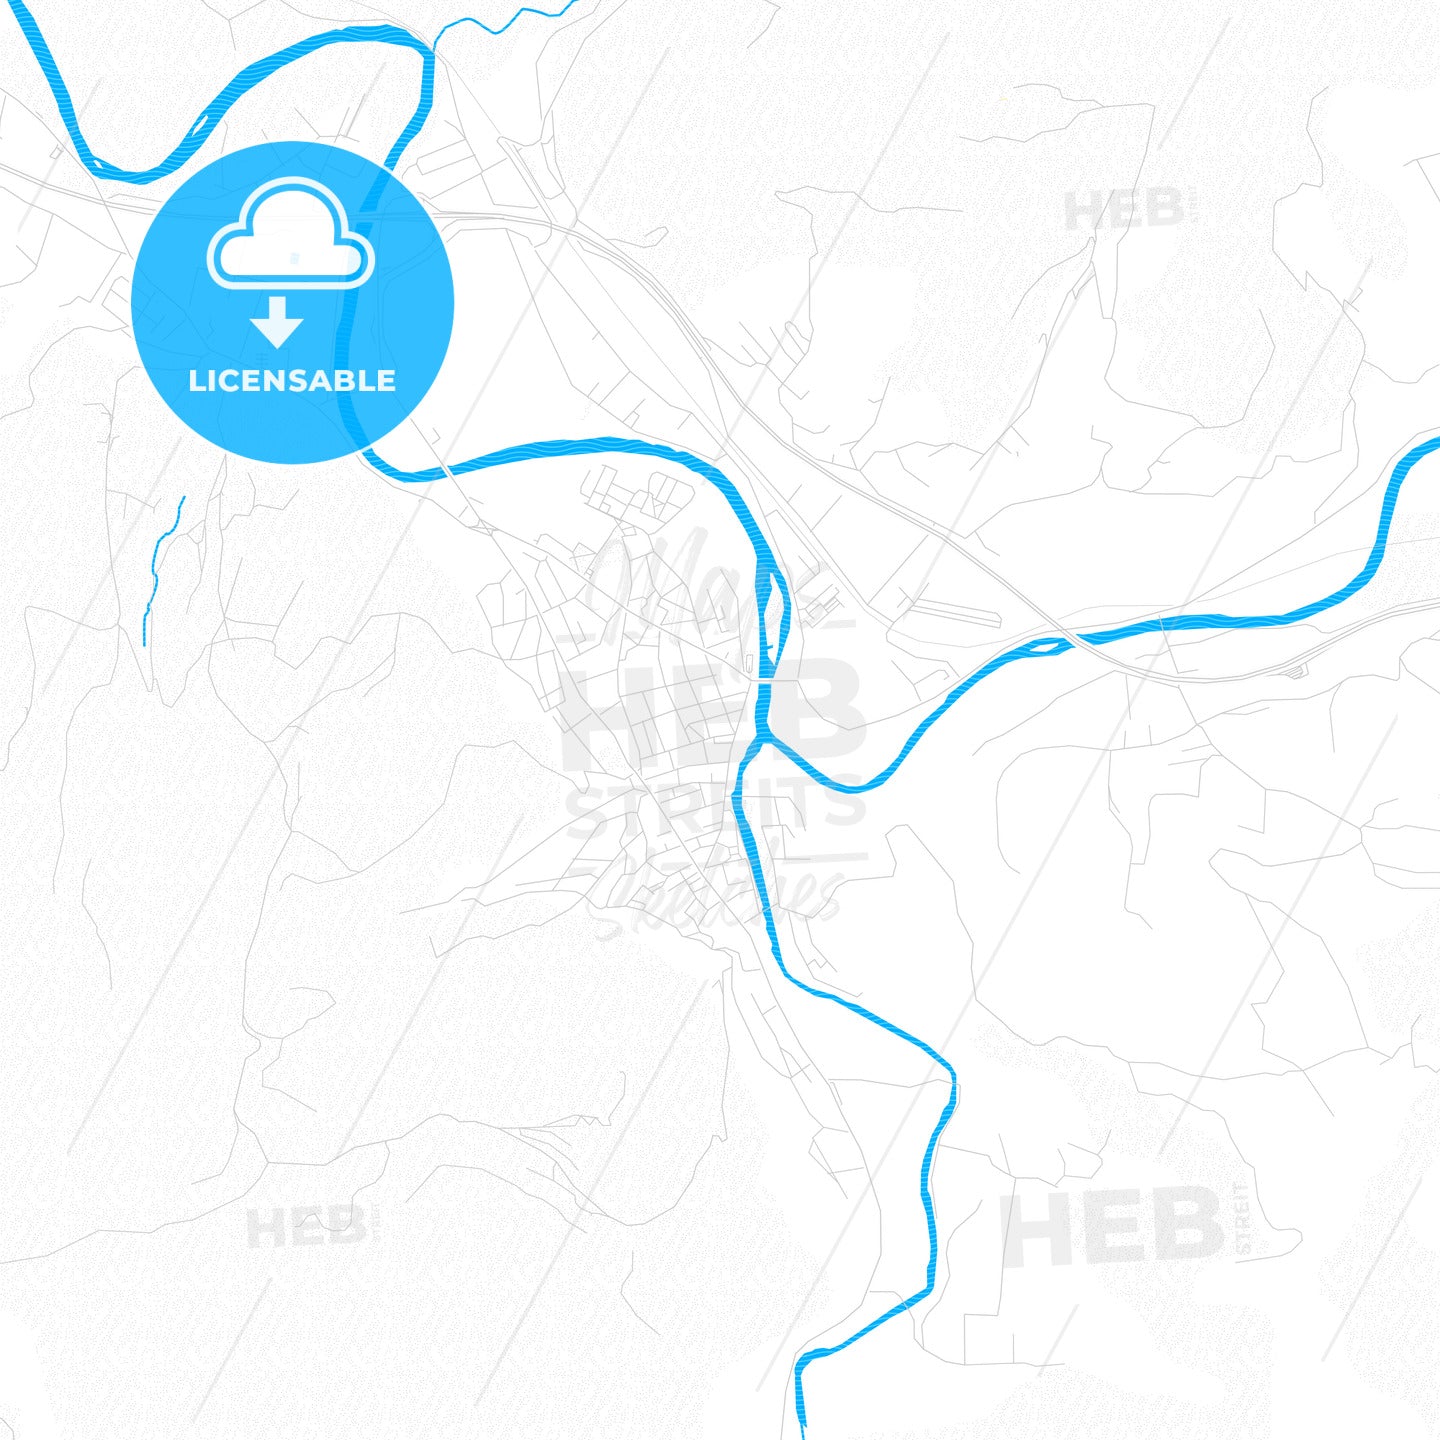 Visoko, Bosnia and Herzegovina PDF vector map with water in focus